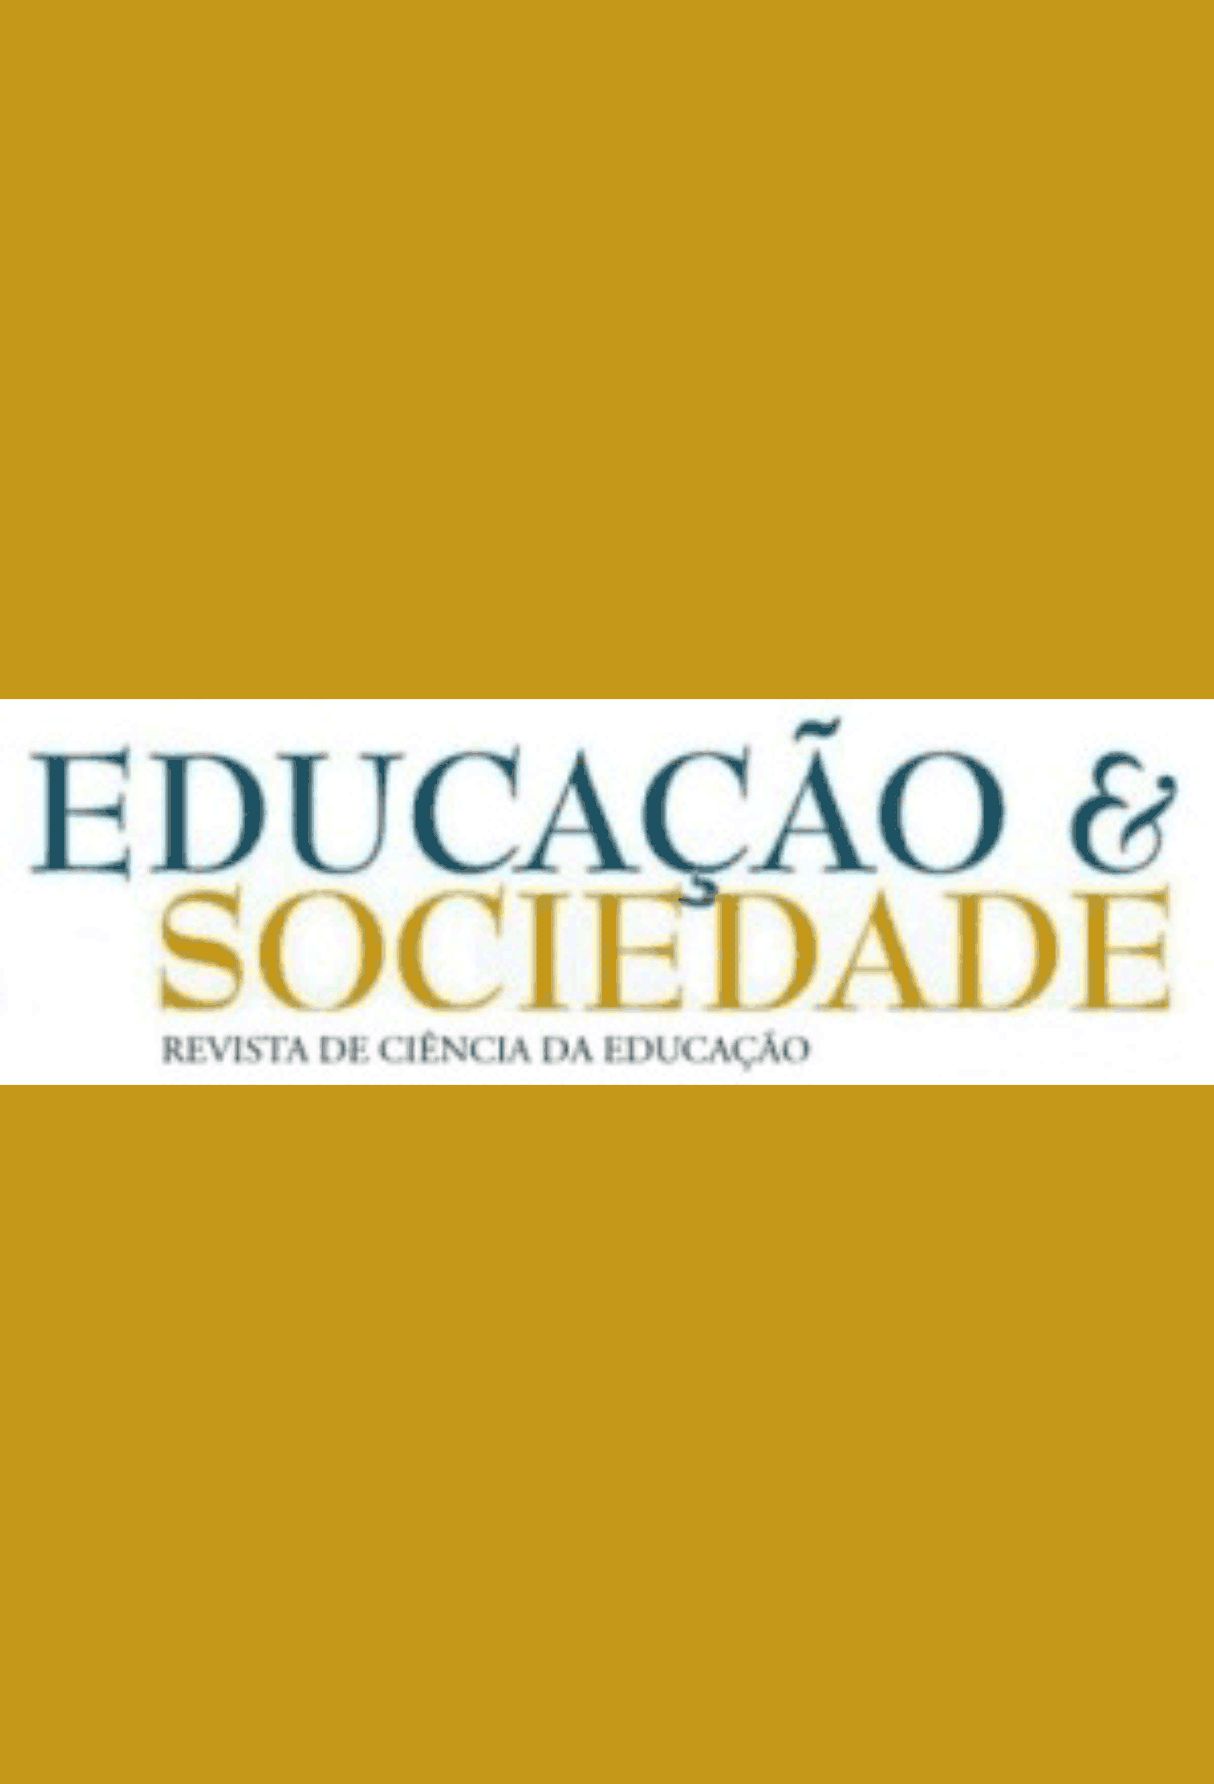 Capa: Educação & Sociedade